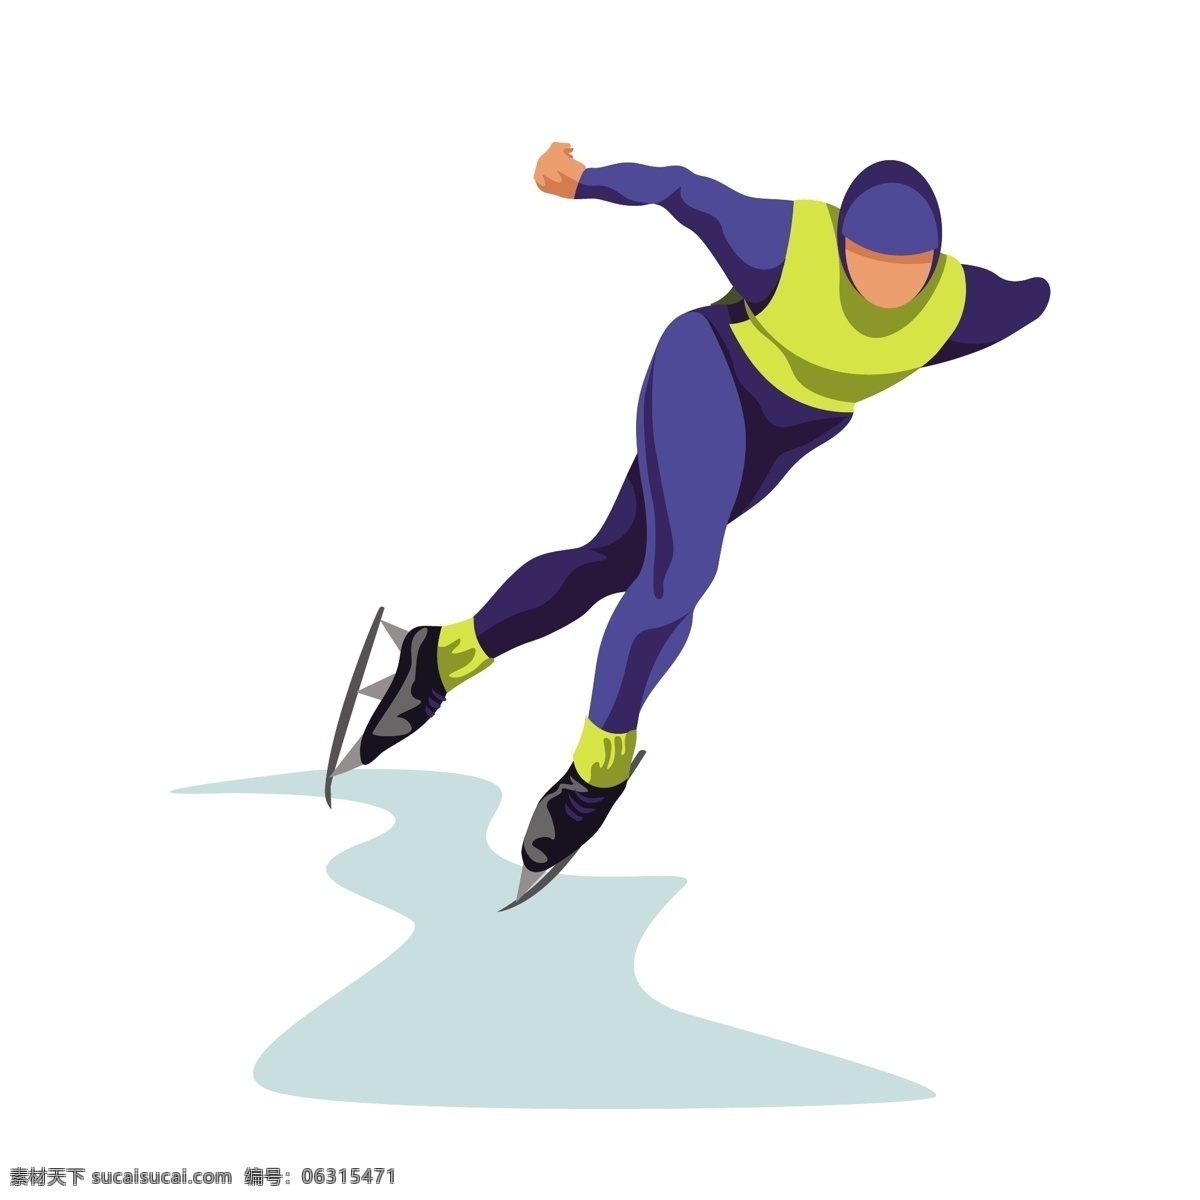 卡通 溜冰 运动员 矢量 溜冰运动员 蓝色 蓝色衣服 卡通运动员 卡通的运动员 溜冰运动